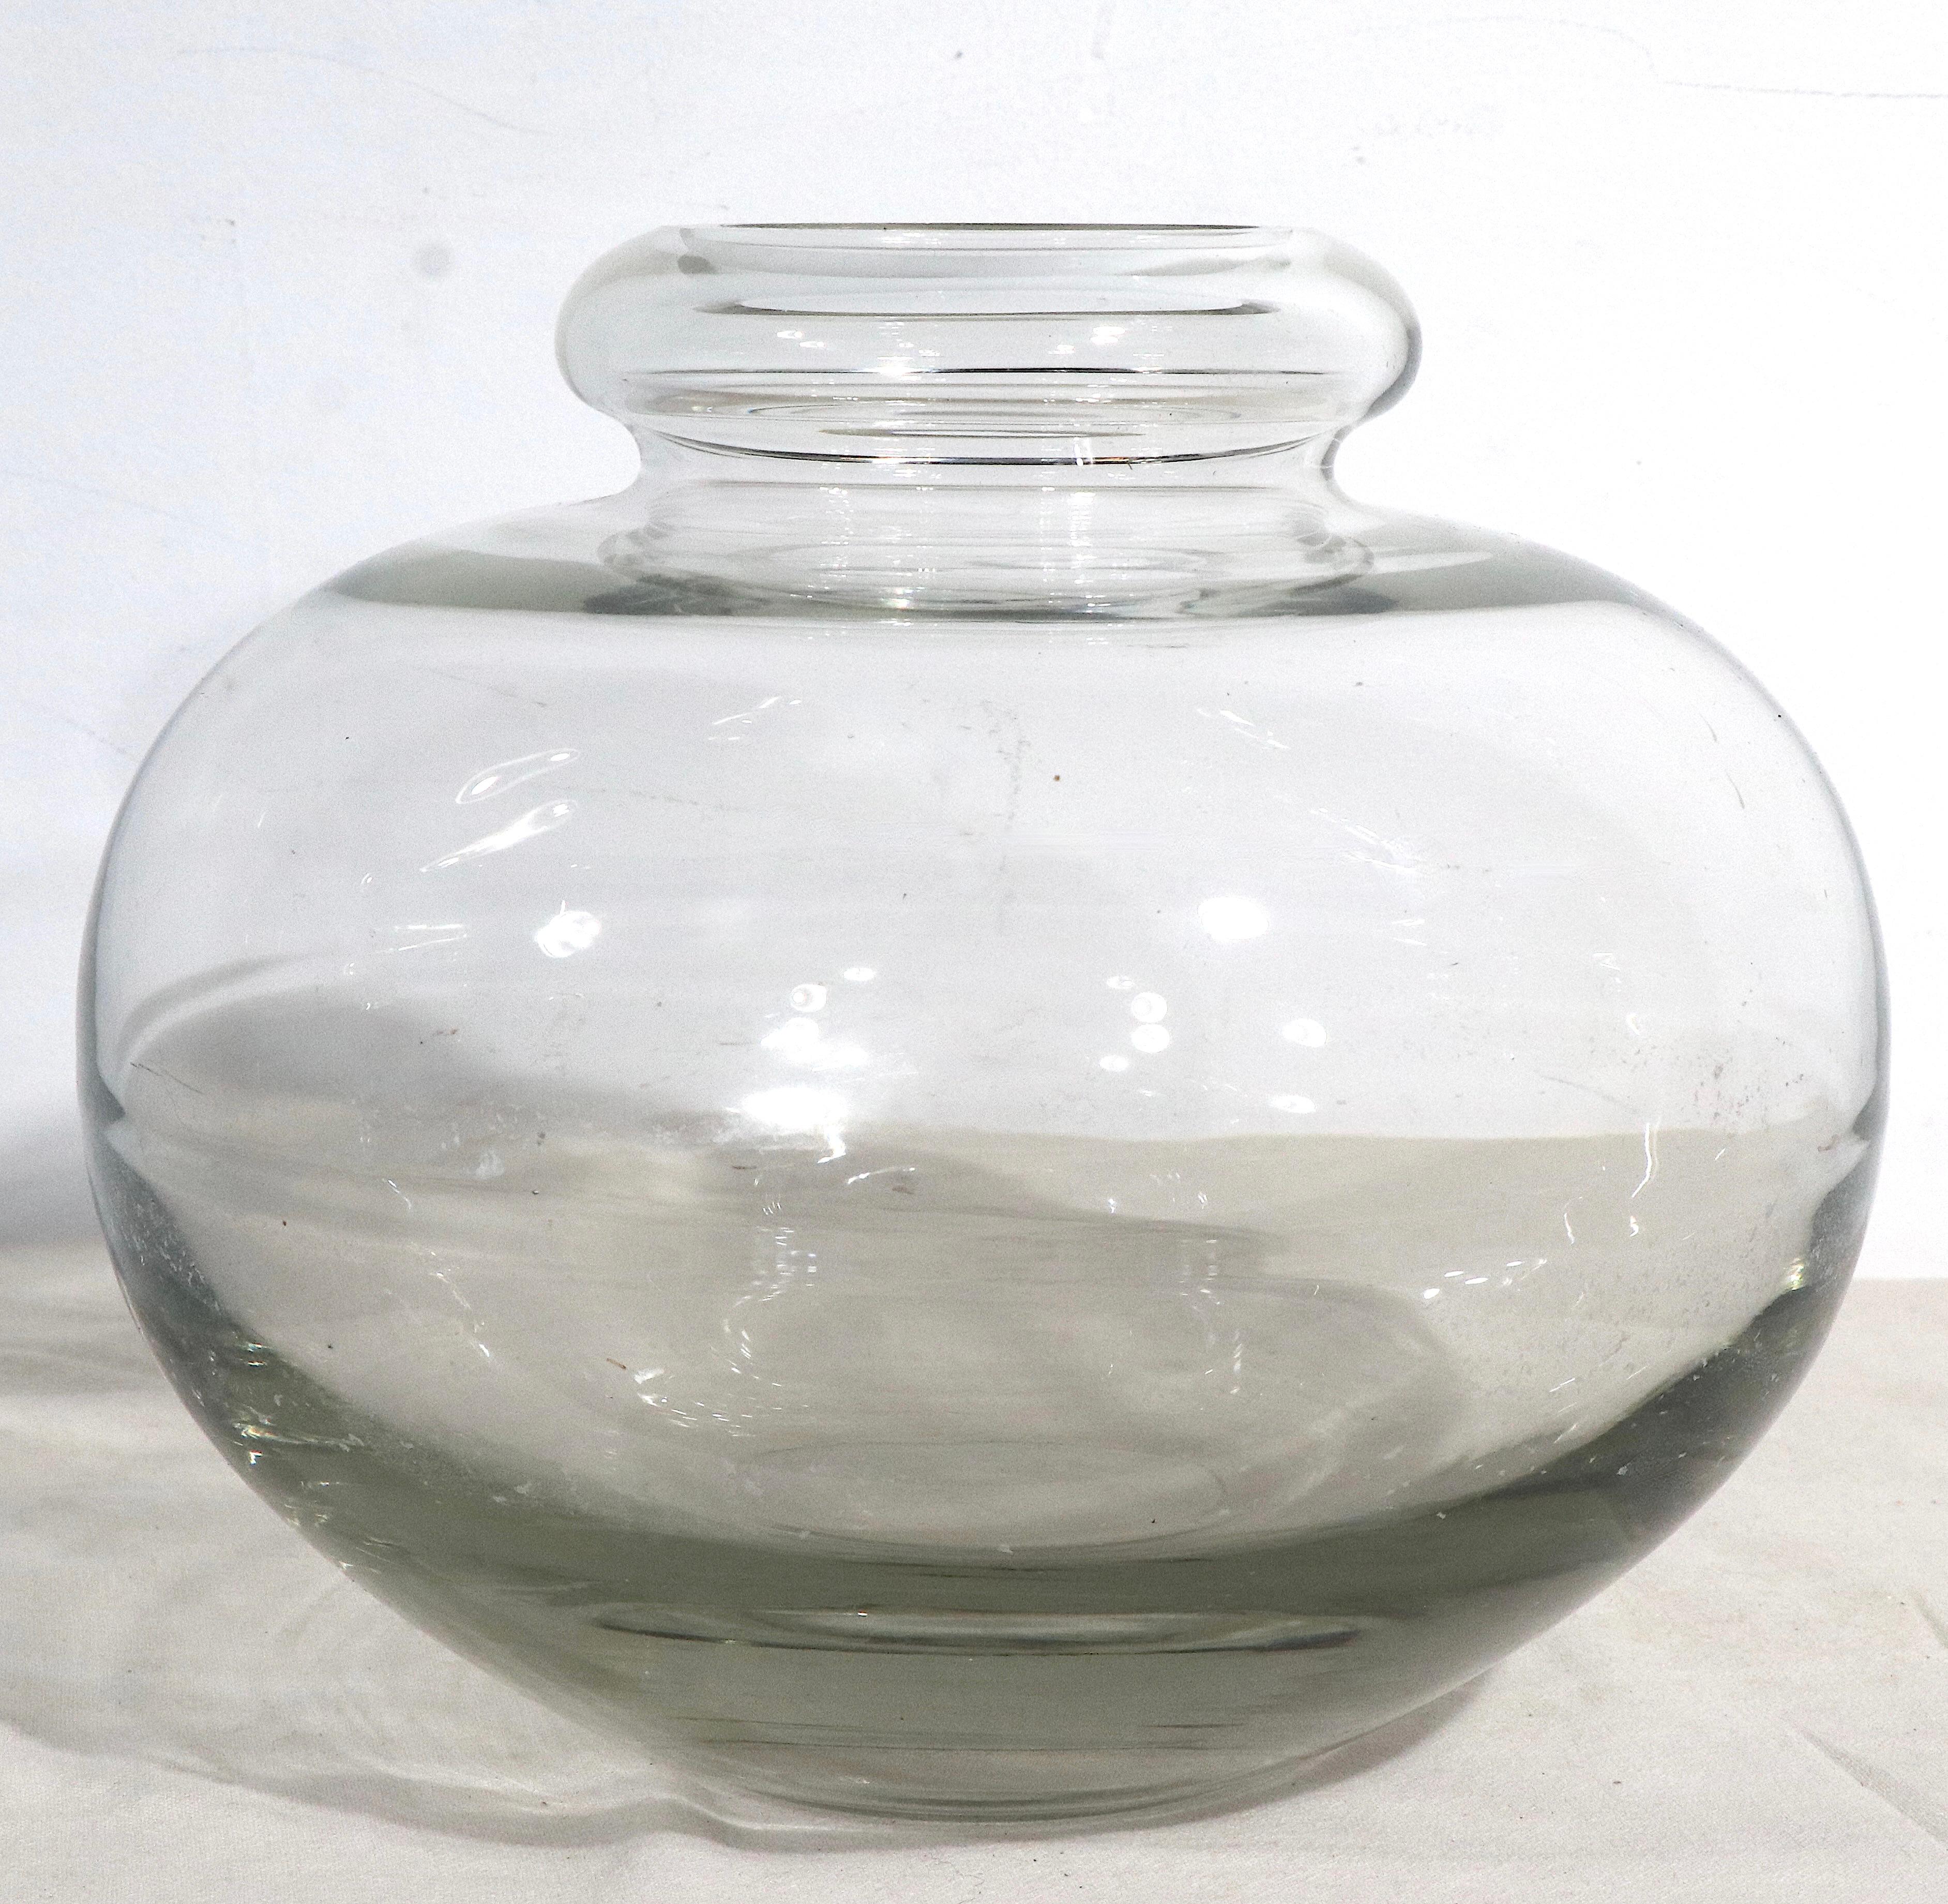 Vase du milieu du siècle en verre transparent, avec un bord supérieur fini et un fond poli. Cette pièce est en très bon état, d'origine, sans dommages ni réparations. Attribué à A.D. Copieur, pour Leerdam Glasfabrik, cet exemplaire n'est pas signé.